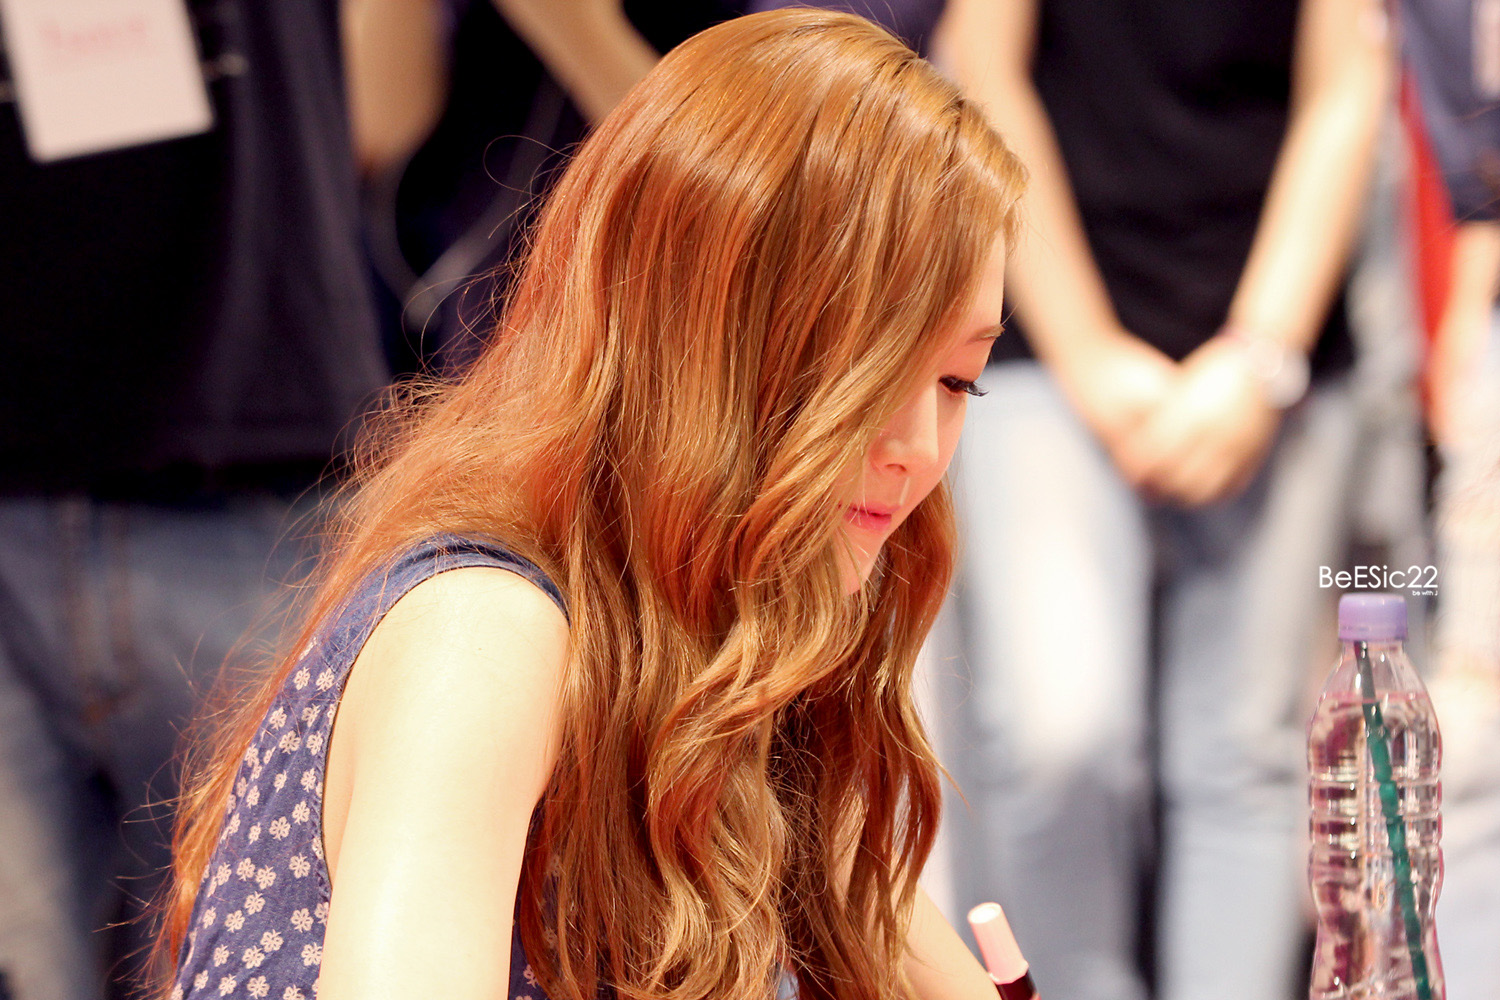 [PIC][14-06-2014]Jessica tham dự buổi fansign lần 2 cho thương hiệu "SOUP" vào trưa nay - Page 2 2506DE4353DB9F3D1519C2